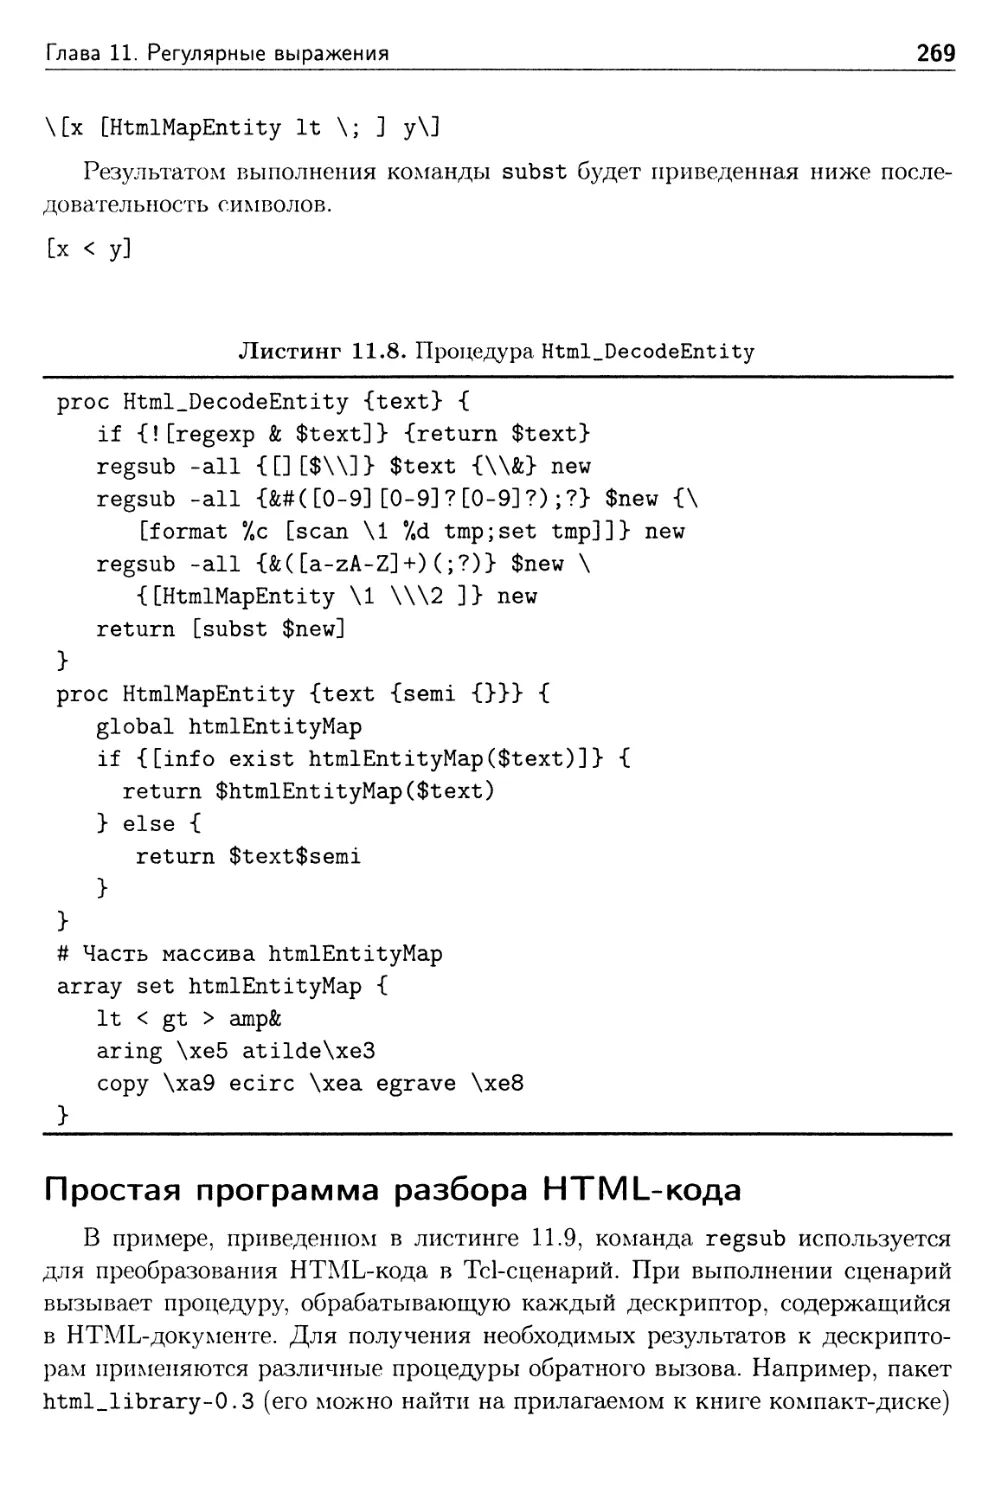 Простая программа разбора HTML-кода